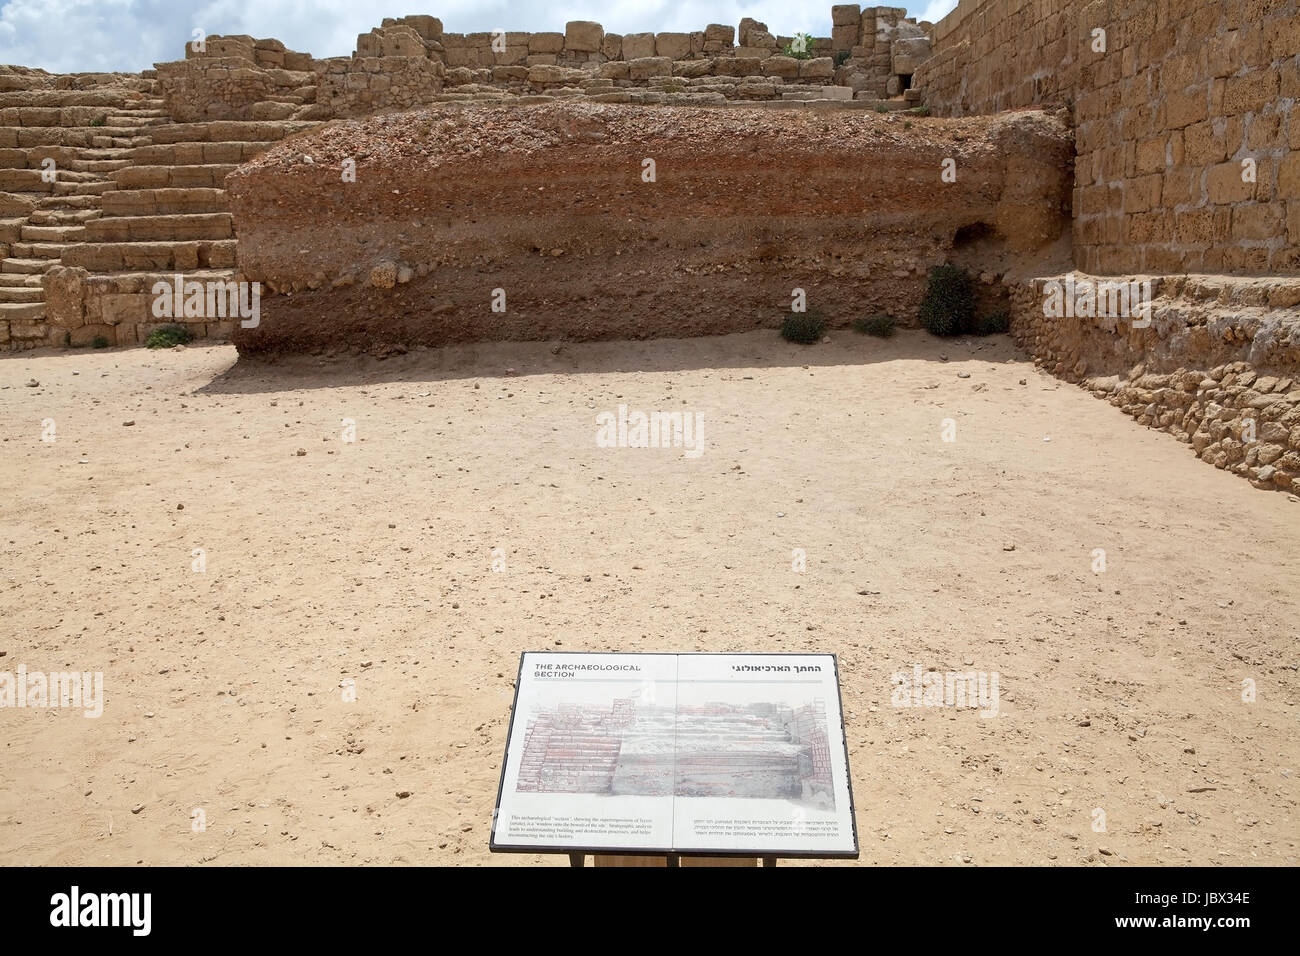 Caesarea, Israel, 14. Juni 2013: das Gremium, in englischer und hebräischer Sprache geschrieben, erklärt die archäologische Abteilung der Ruinen in Caesarea Nationalpark Stockfoto